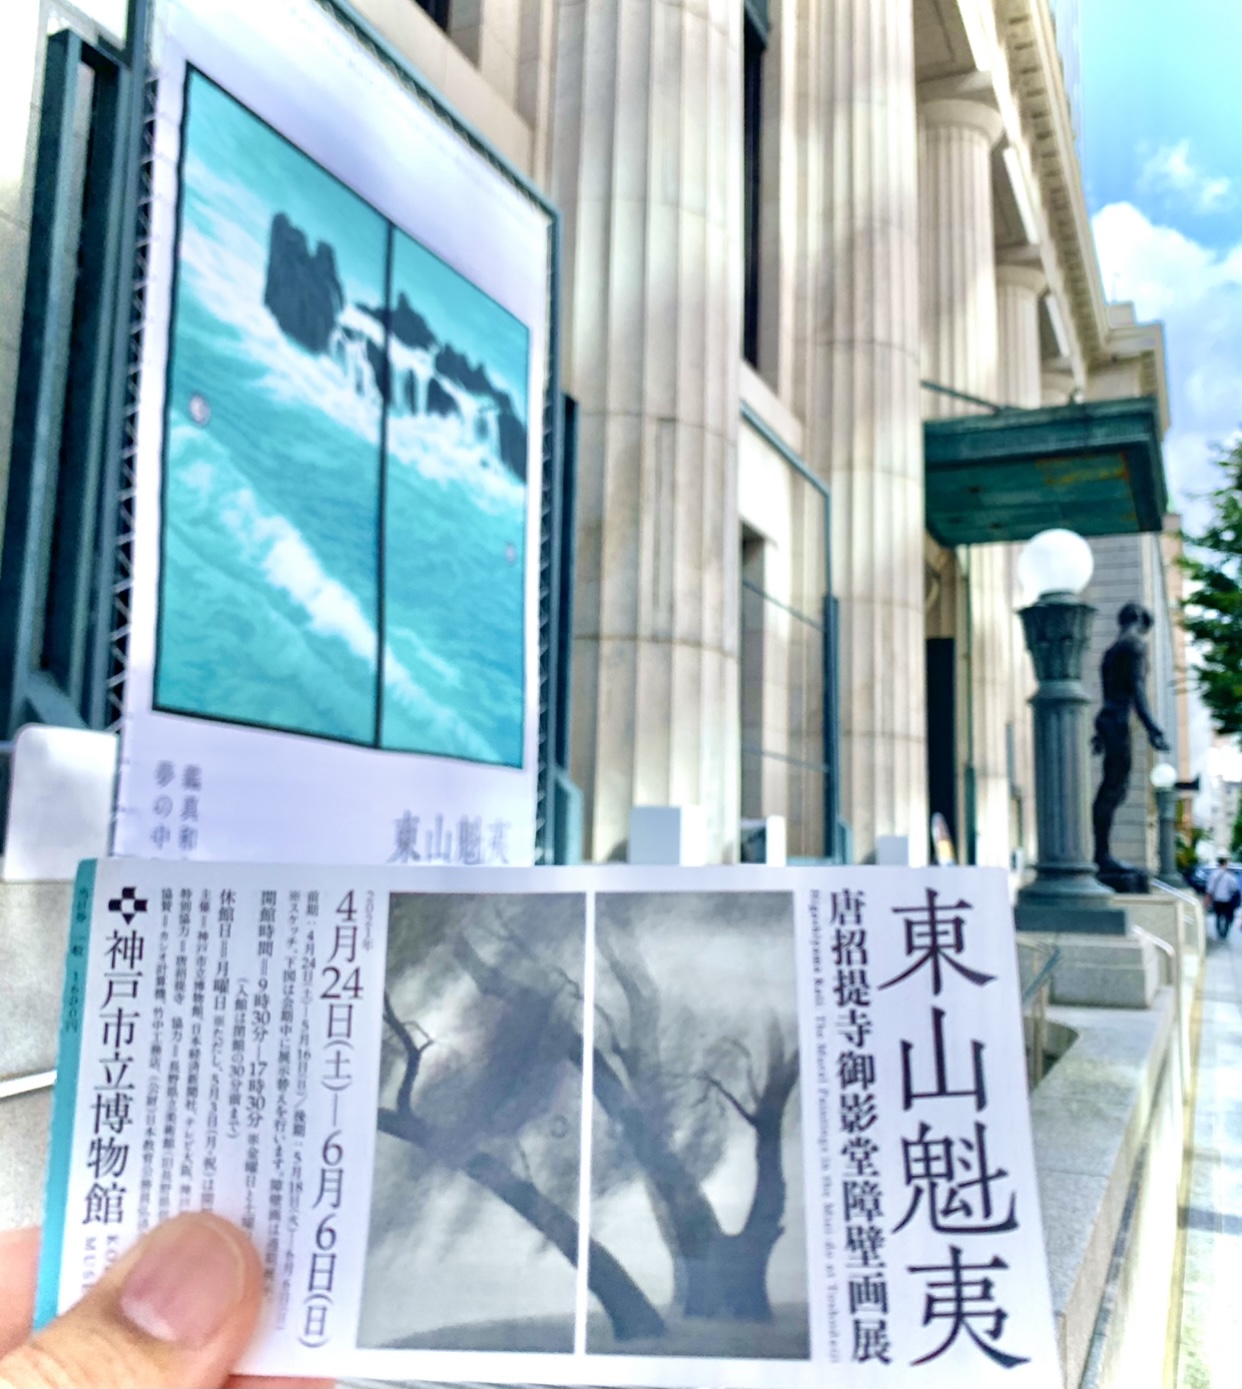 神戸市博物館の東山魁夷展。唐招提寺御影堂障壁画。藤美堂。